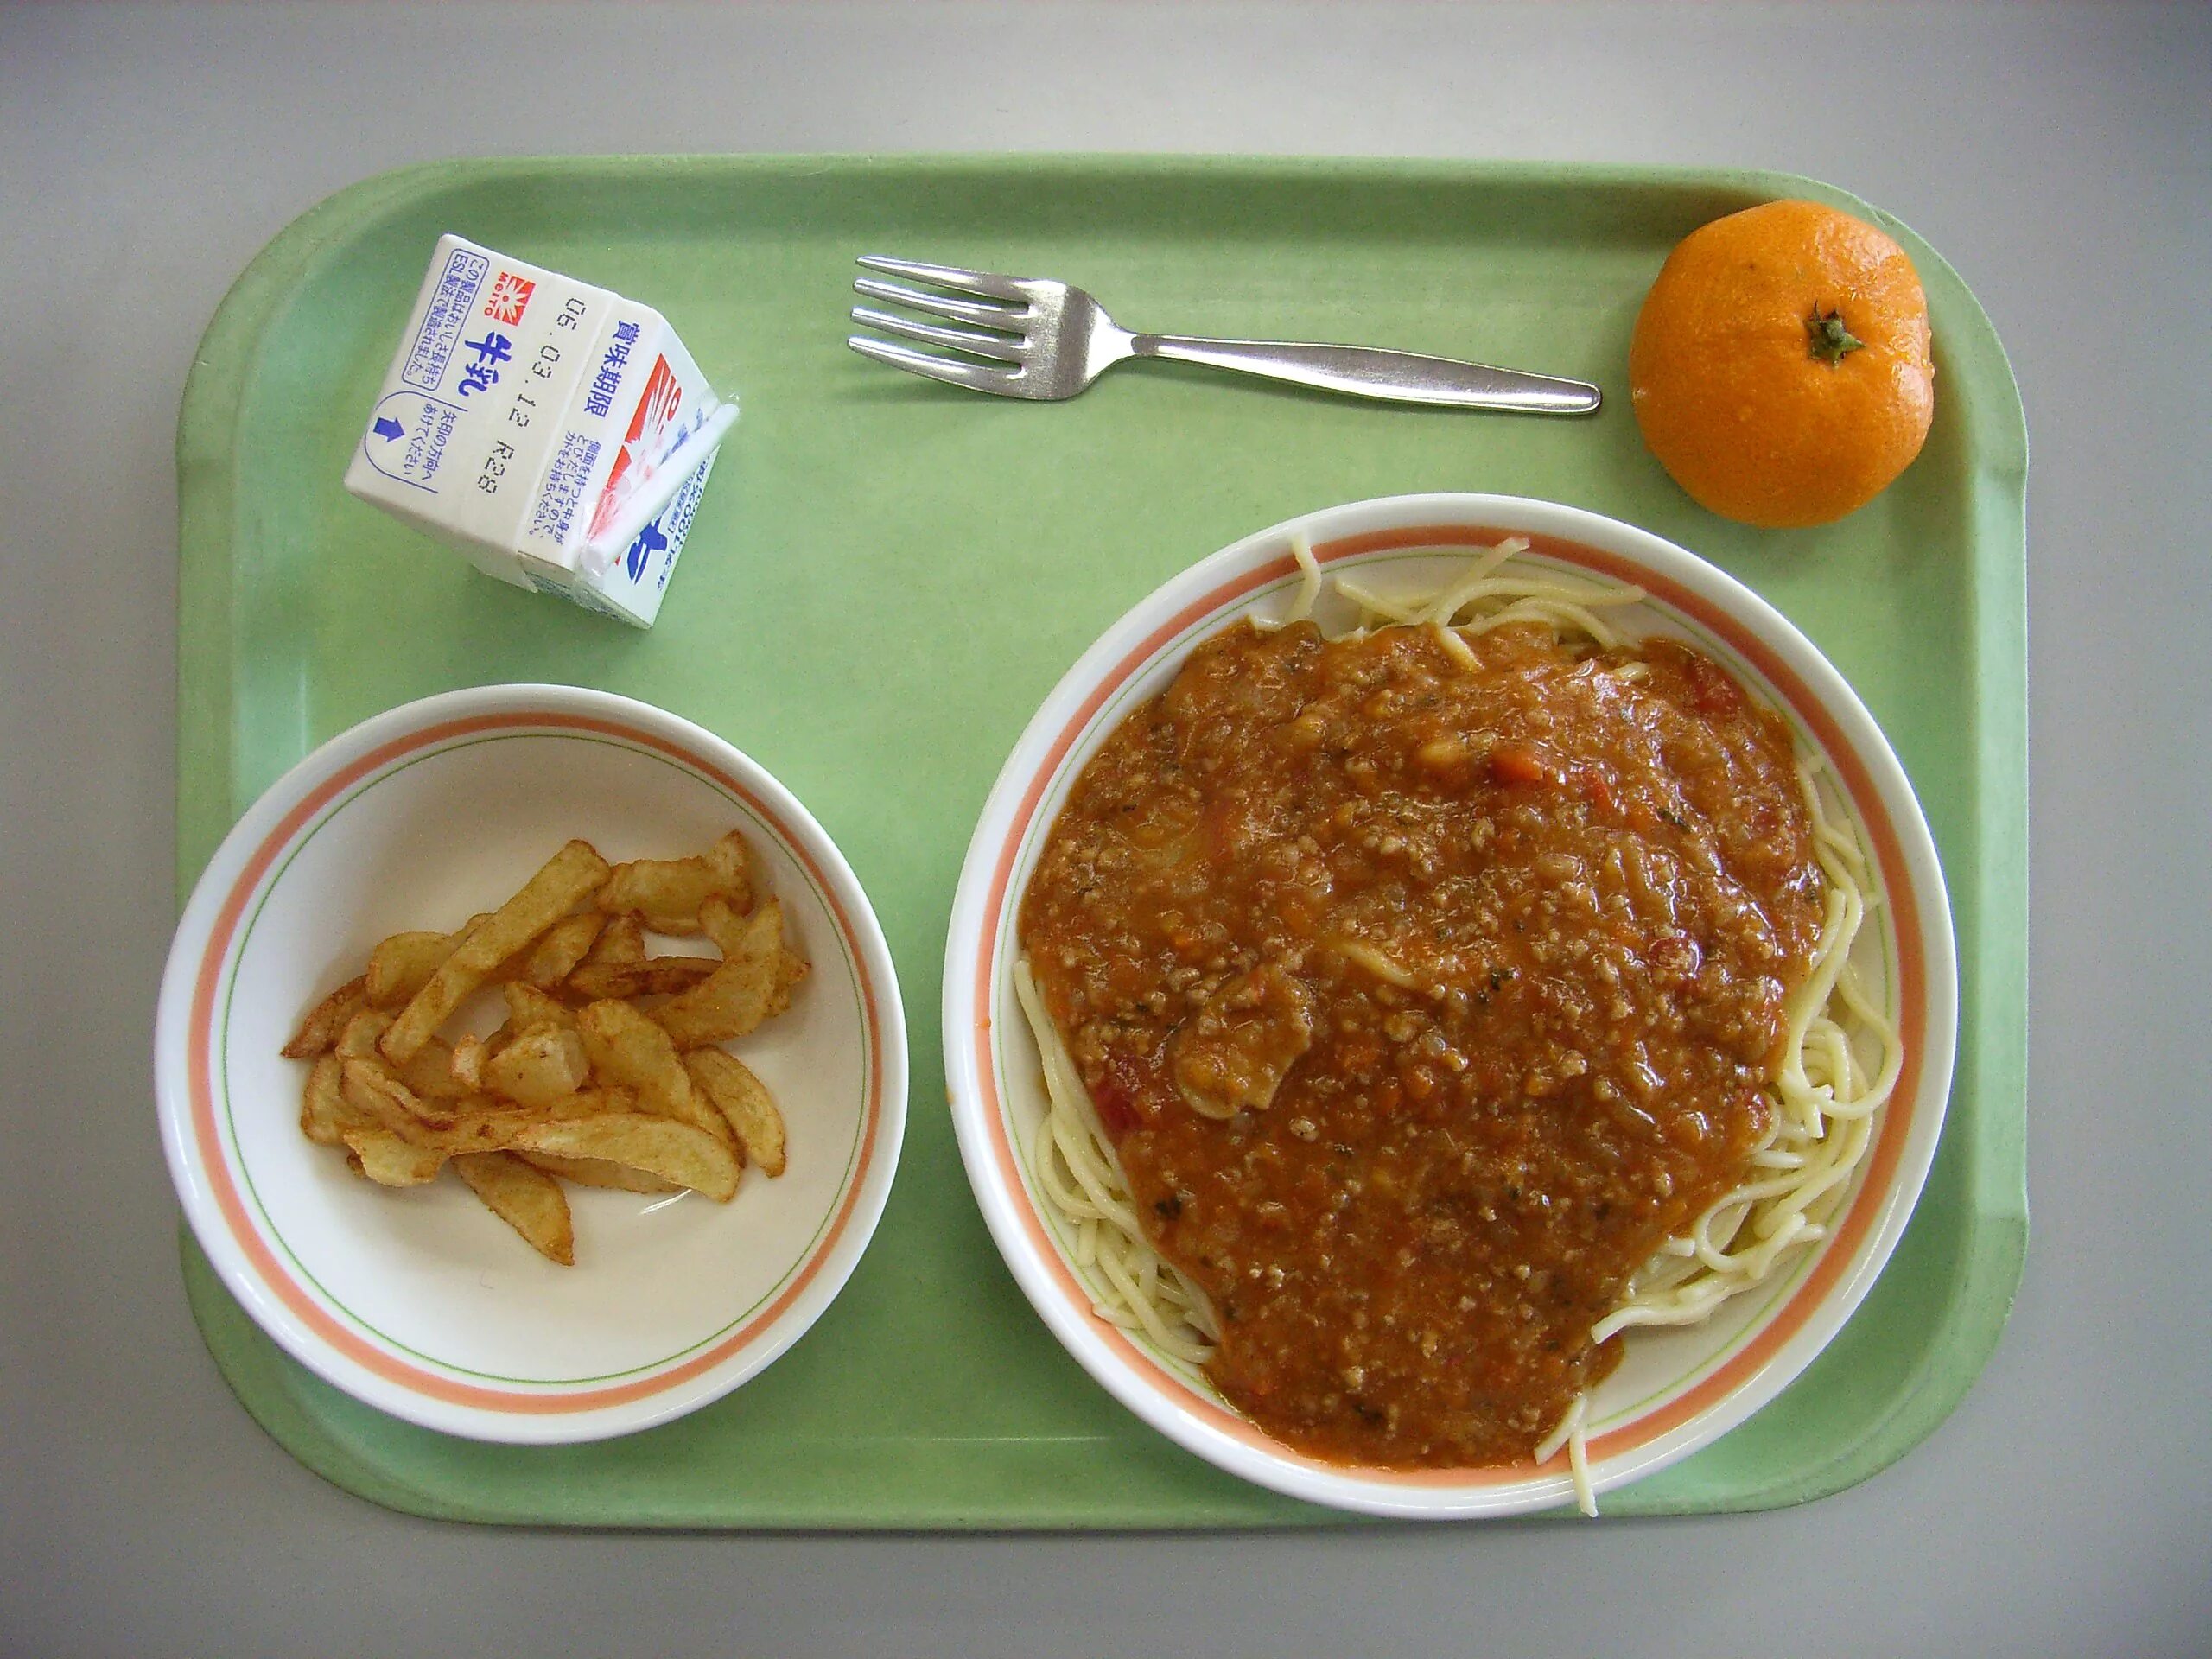 Обеды завтраки в школе. Обед в школе. Школьная еда. Школьный завтрак. Американский школьный завтрак.